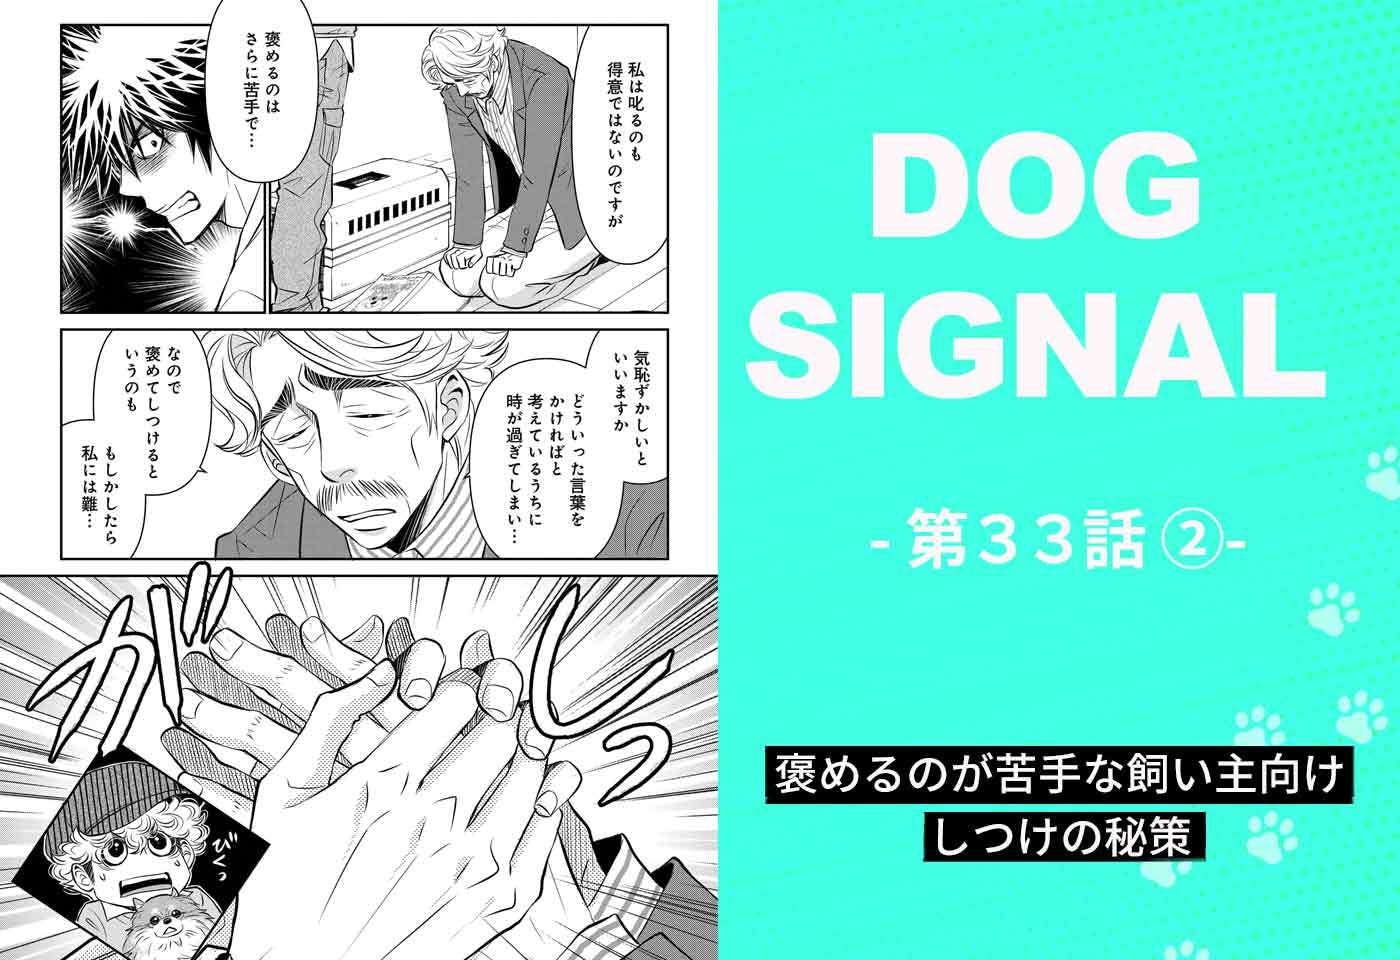 『DOG SIGNAL』33話目2/4　愛犬と飼い主に合ったしつけ（コミック7巻収録分）